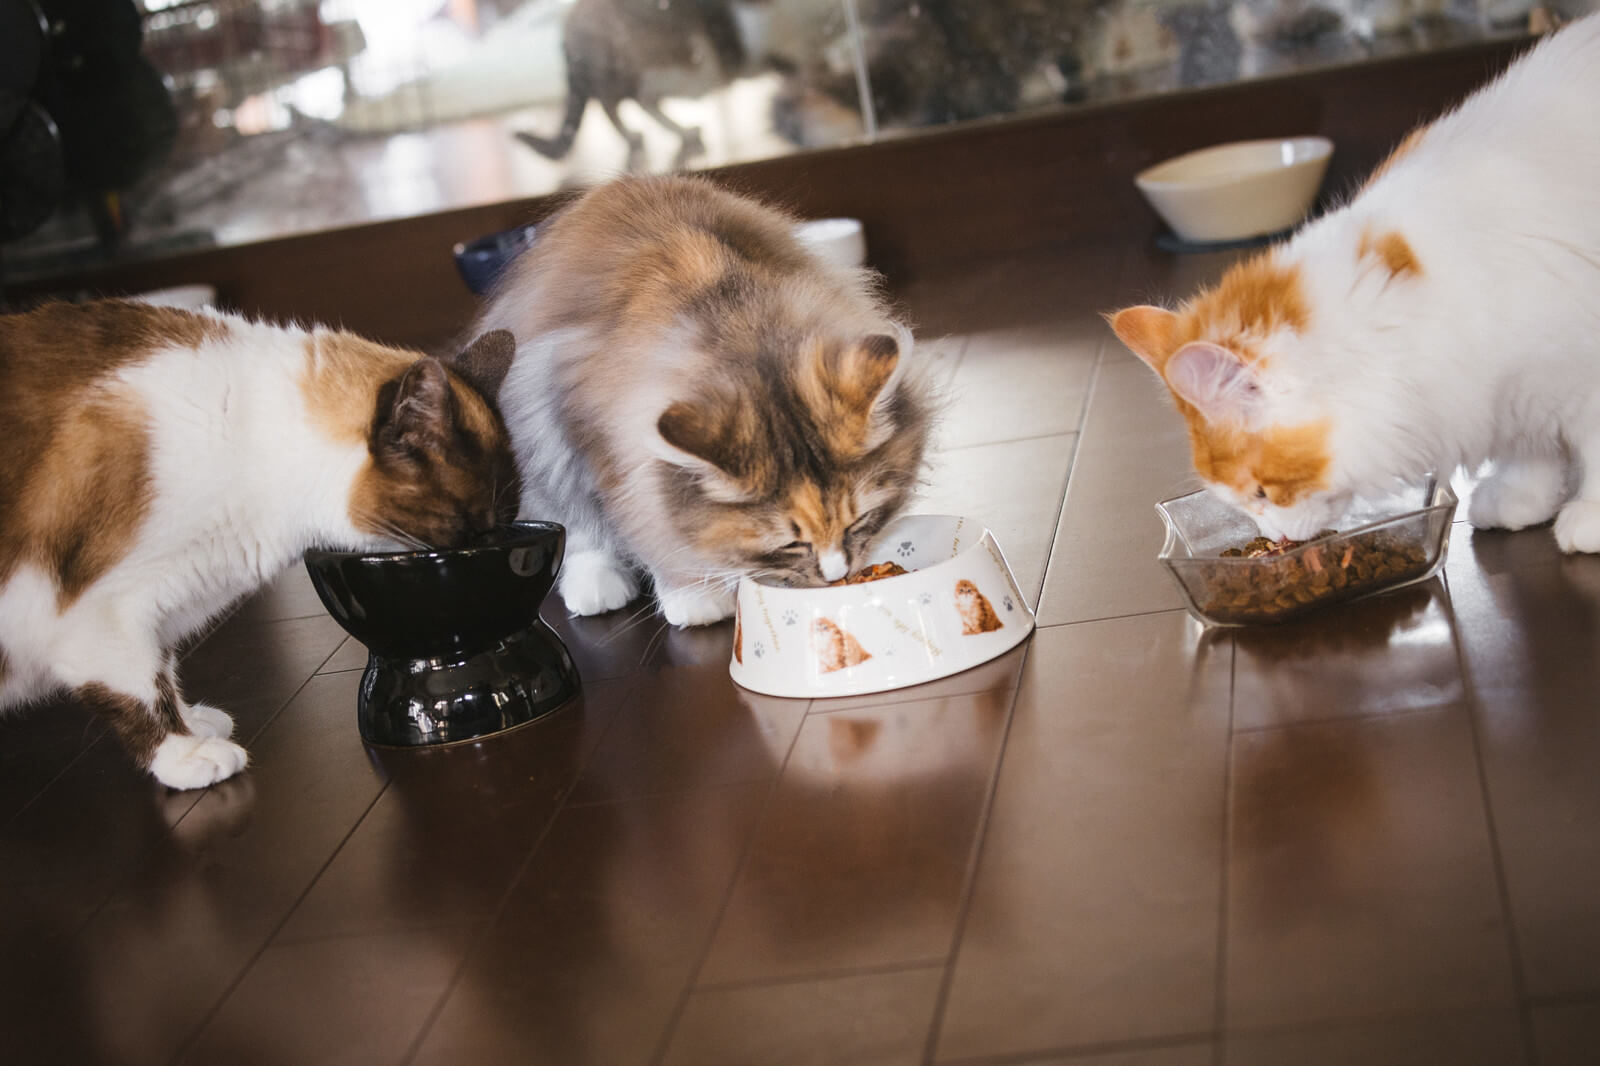 餌を食べる3匹の猫